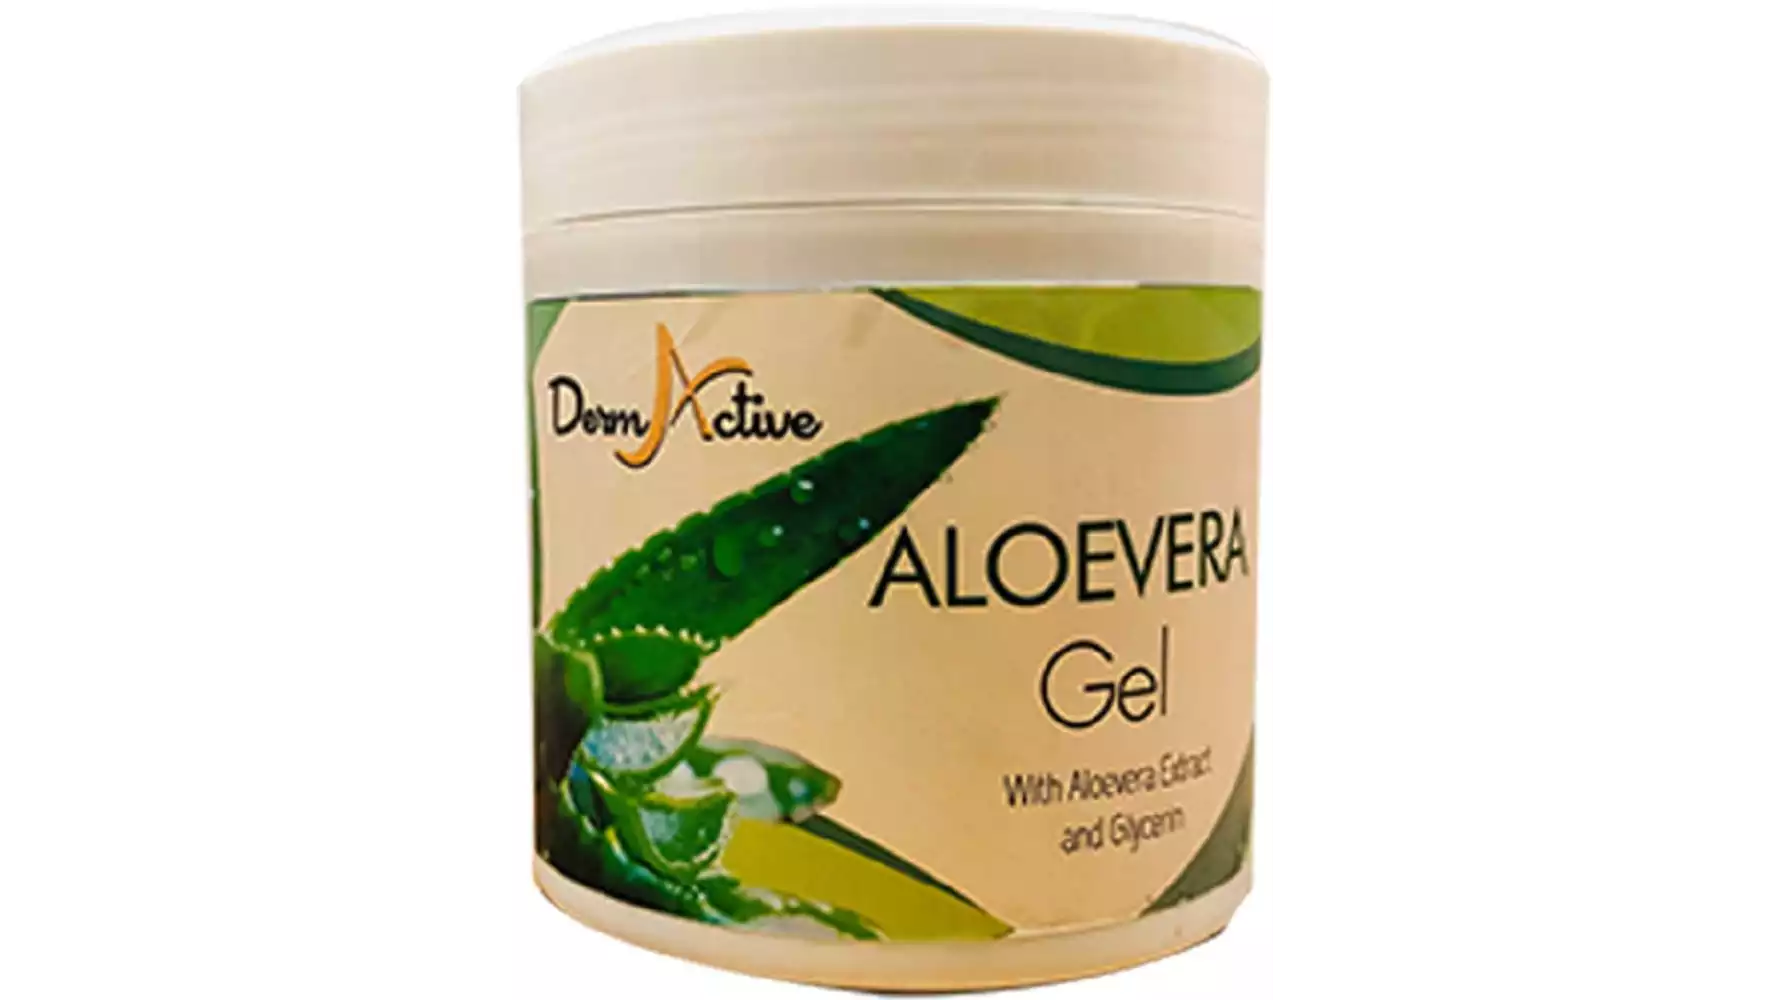 DermActive Aloevera Gel (500g)